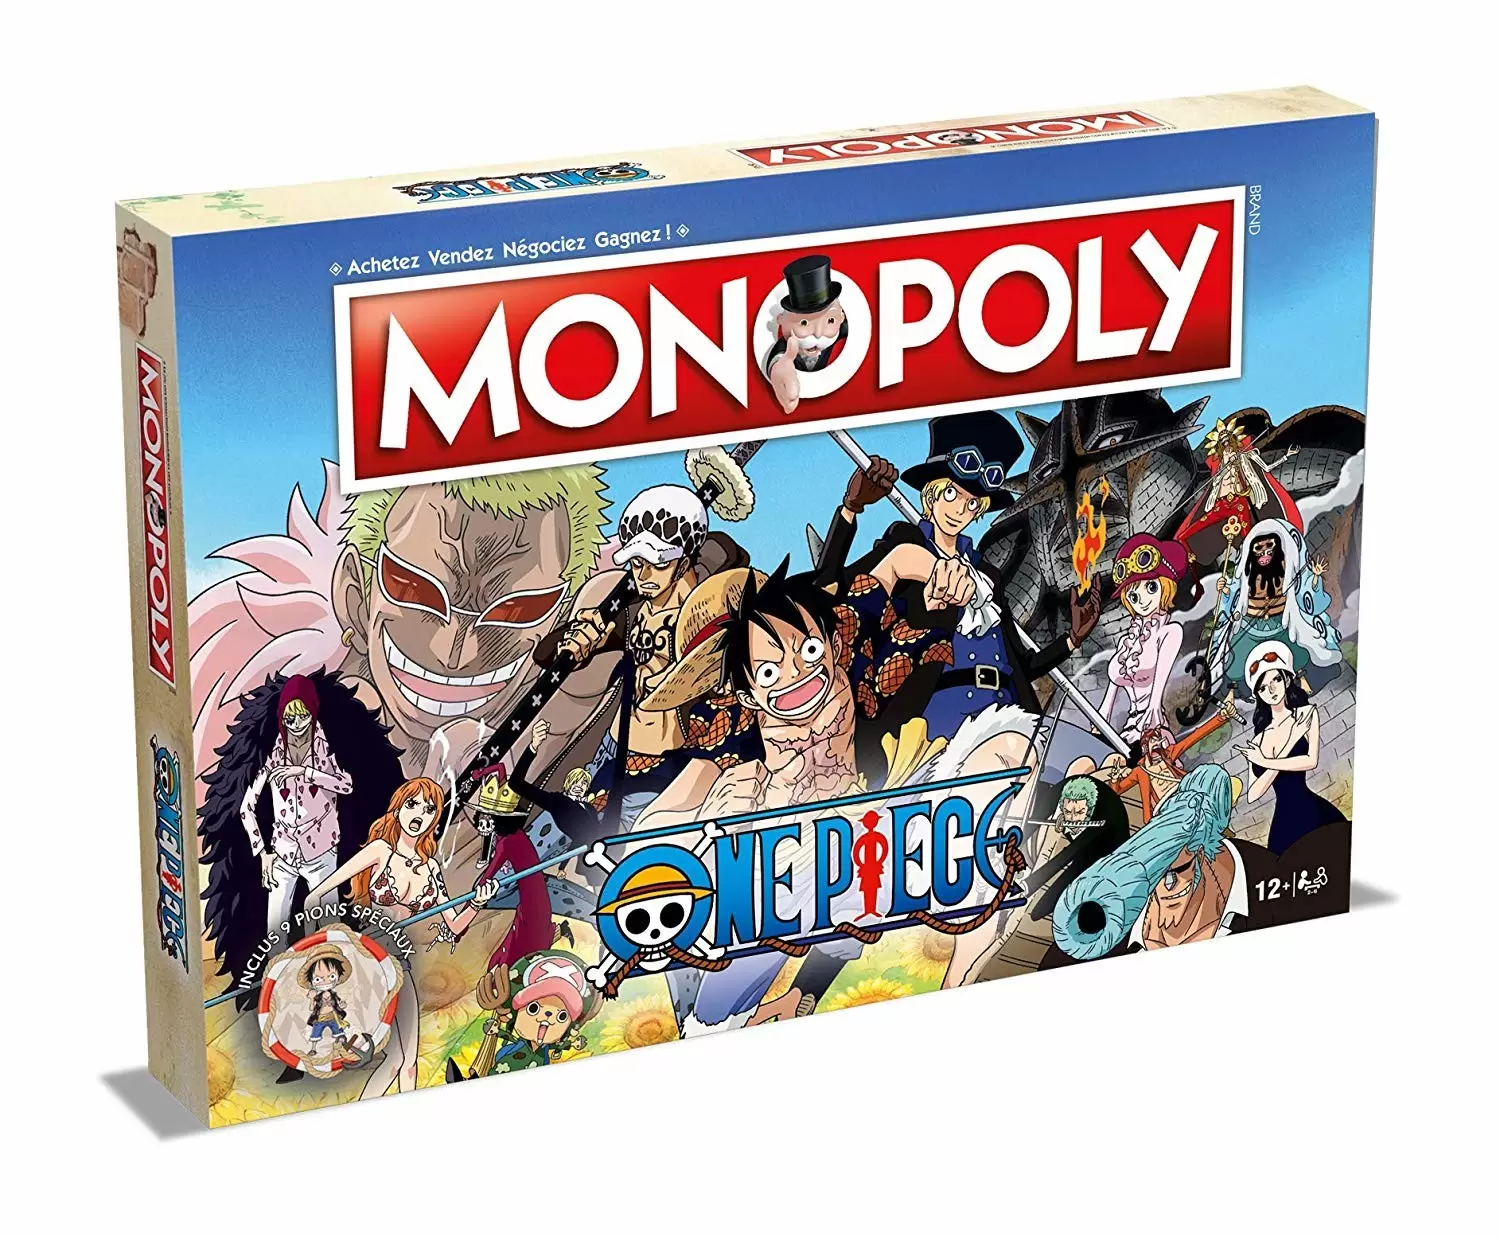 Monopoly Manga & Comics - Monopoly One Piece